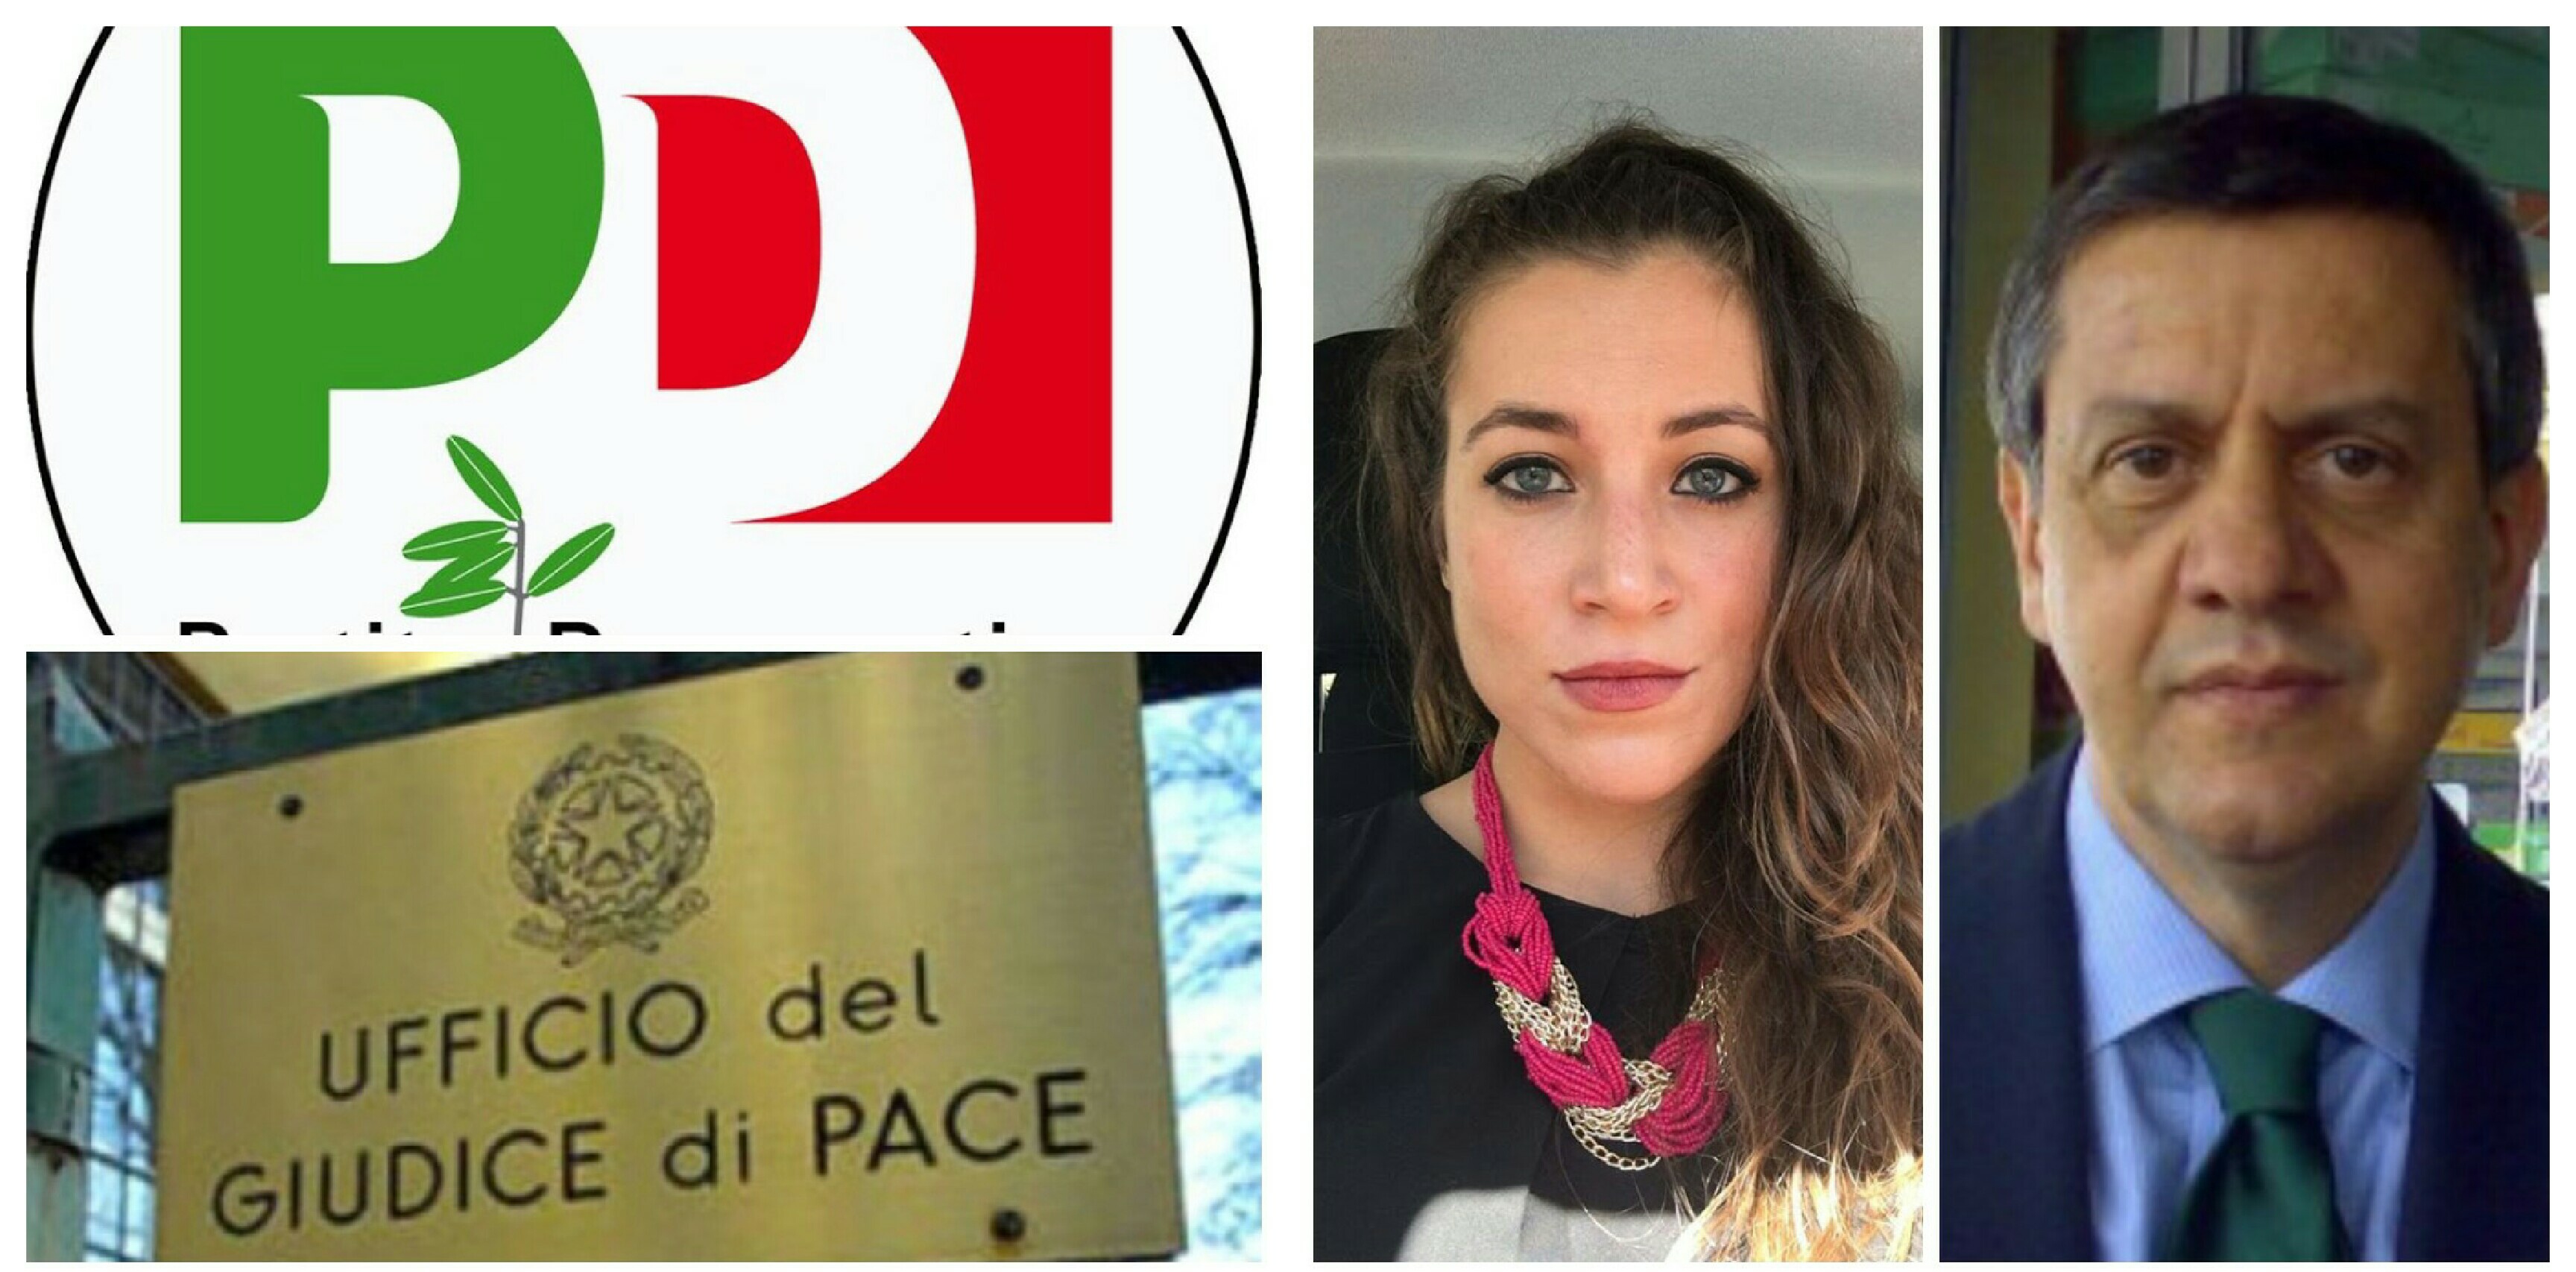 PD-Paola Massarelli-Antonio Cuomo-Giudice di Pace